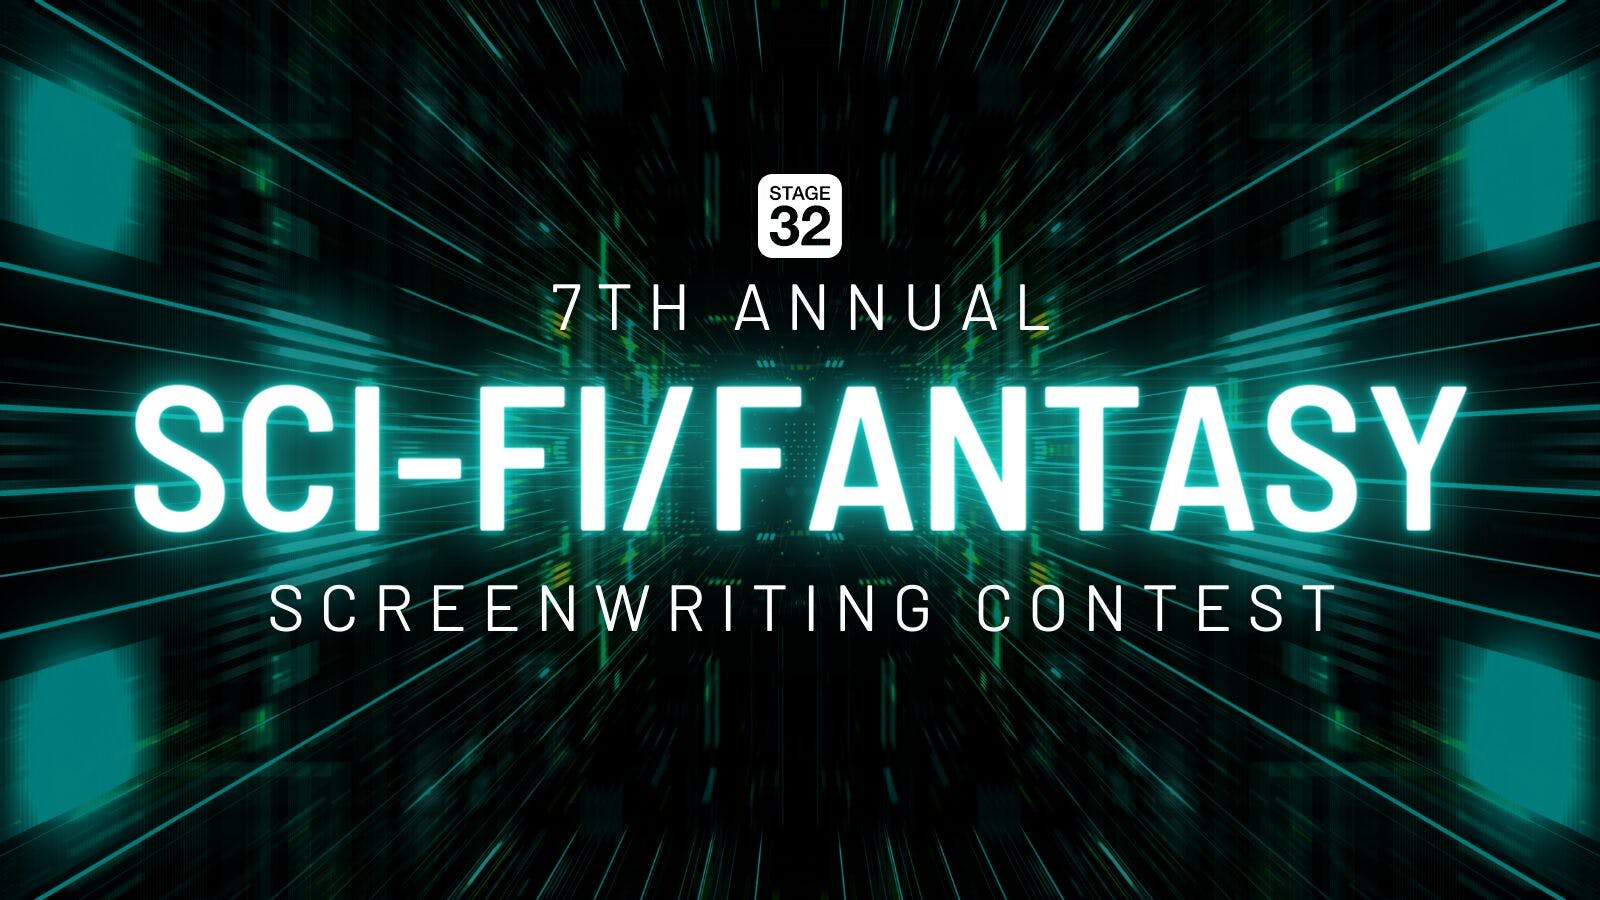 Announcing The 7th Annual Sci-Fi/Fantasy Screenwriting Contest